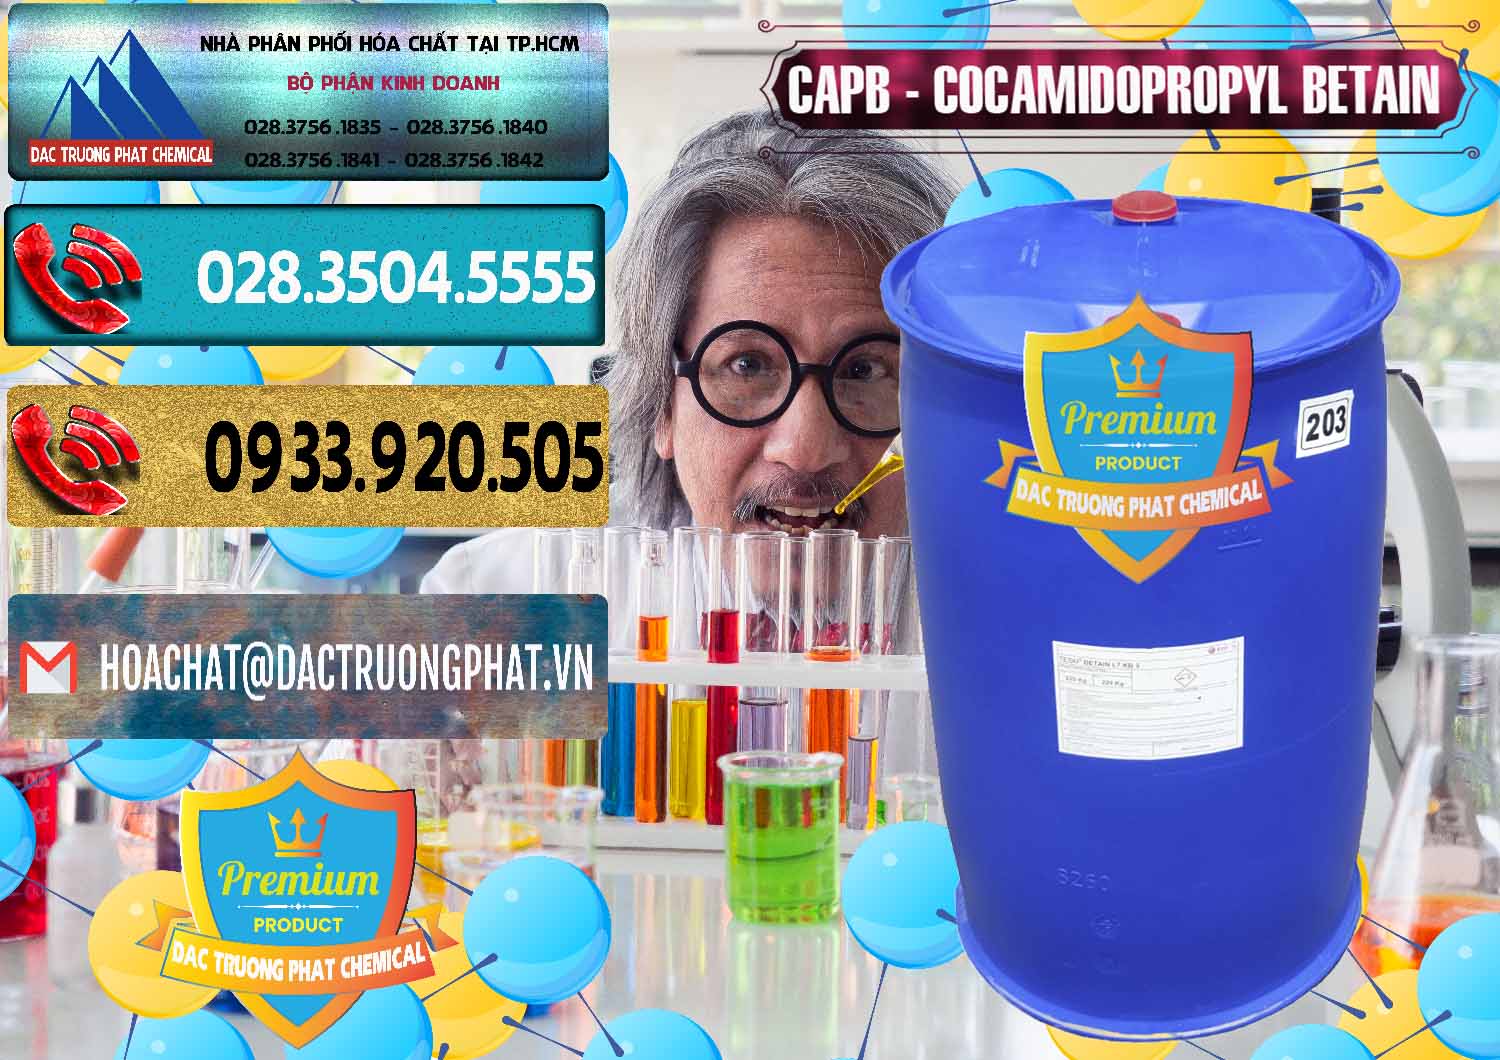 Chuyên bán - phân phối Cocamidopropyl Betaine - CAPB Tego Indonesia - 0327 - Đơn vị kinh doanh _ cung cấp hóa chất tại TP.HCM - hoachatdetnhuom.com